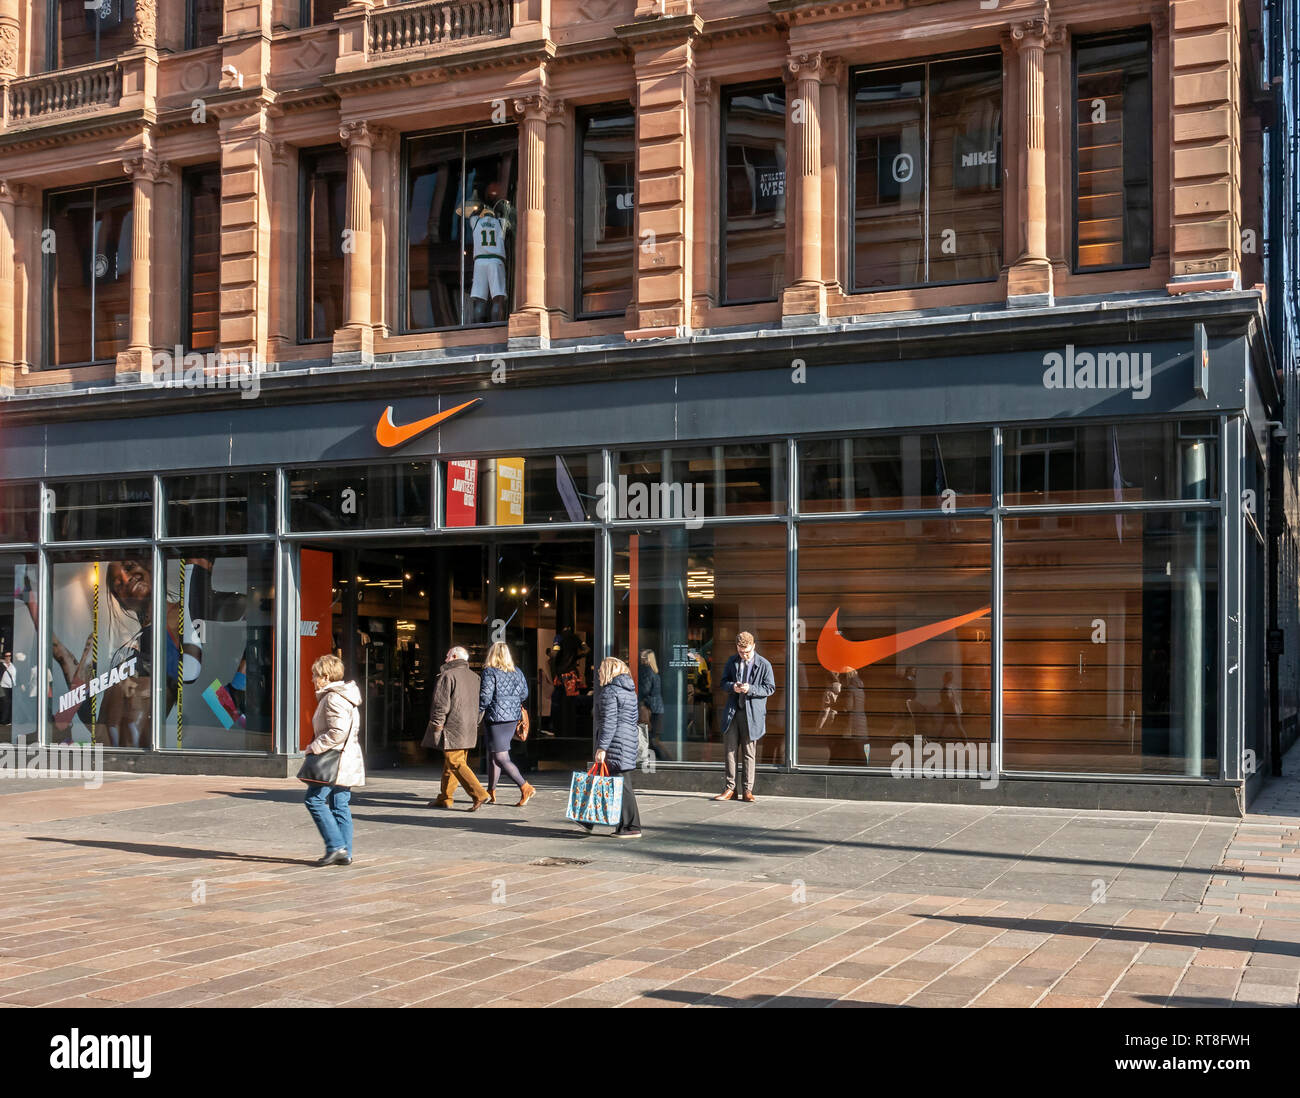 Nike shop in Buchanan Street Glasgow Scotland UK Stock Photo - Alamy